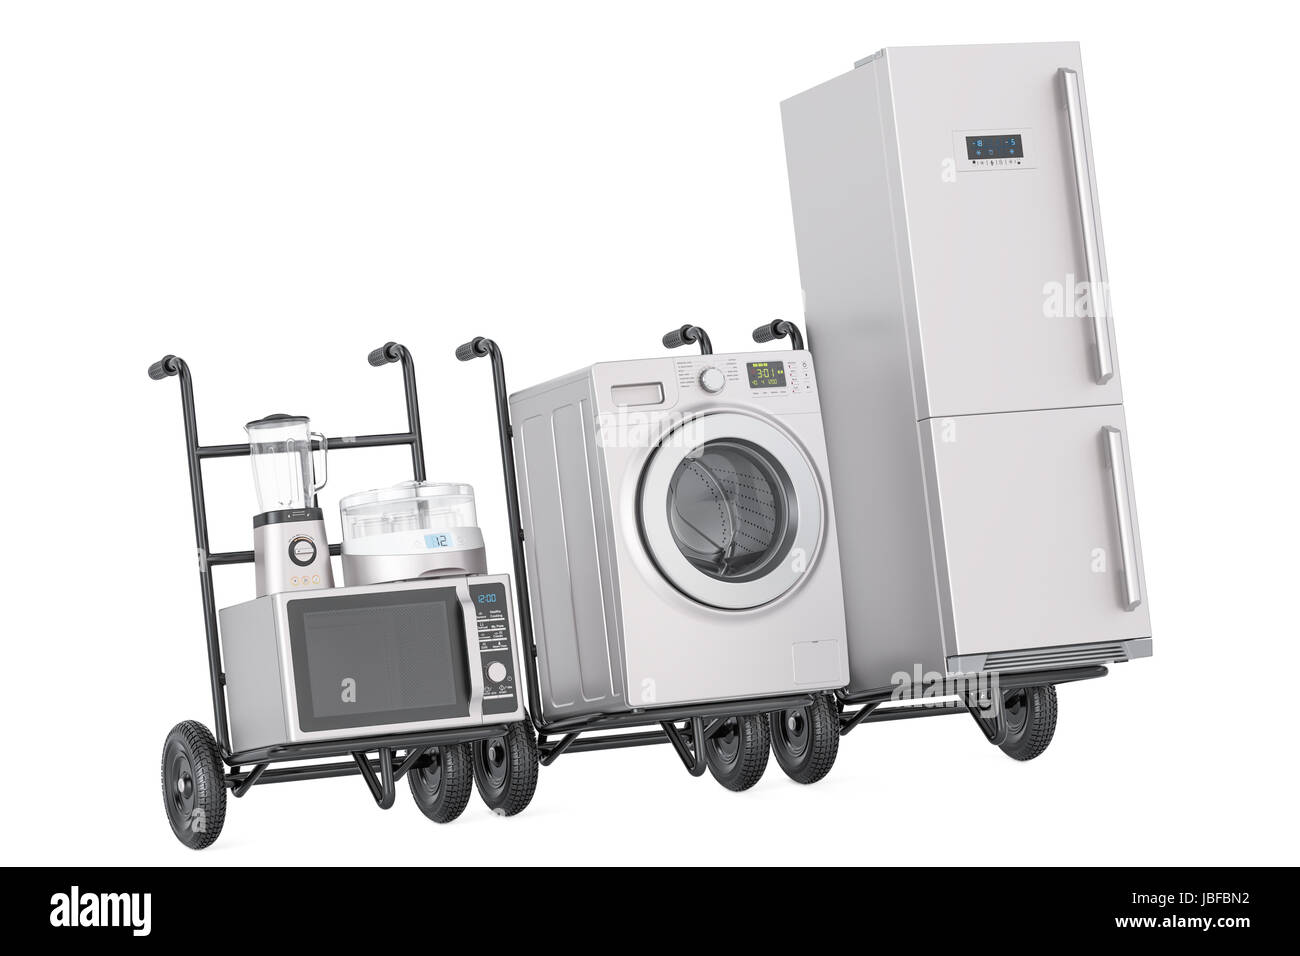 La livraison des appareils de cuisine. Des camions de main avec réfrigérateur, lave-linge, micro-ondes, mixeur et yaourtière, 3D Rendering Banque D'Images